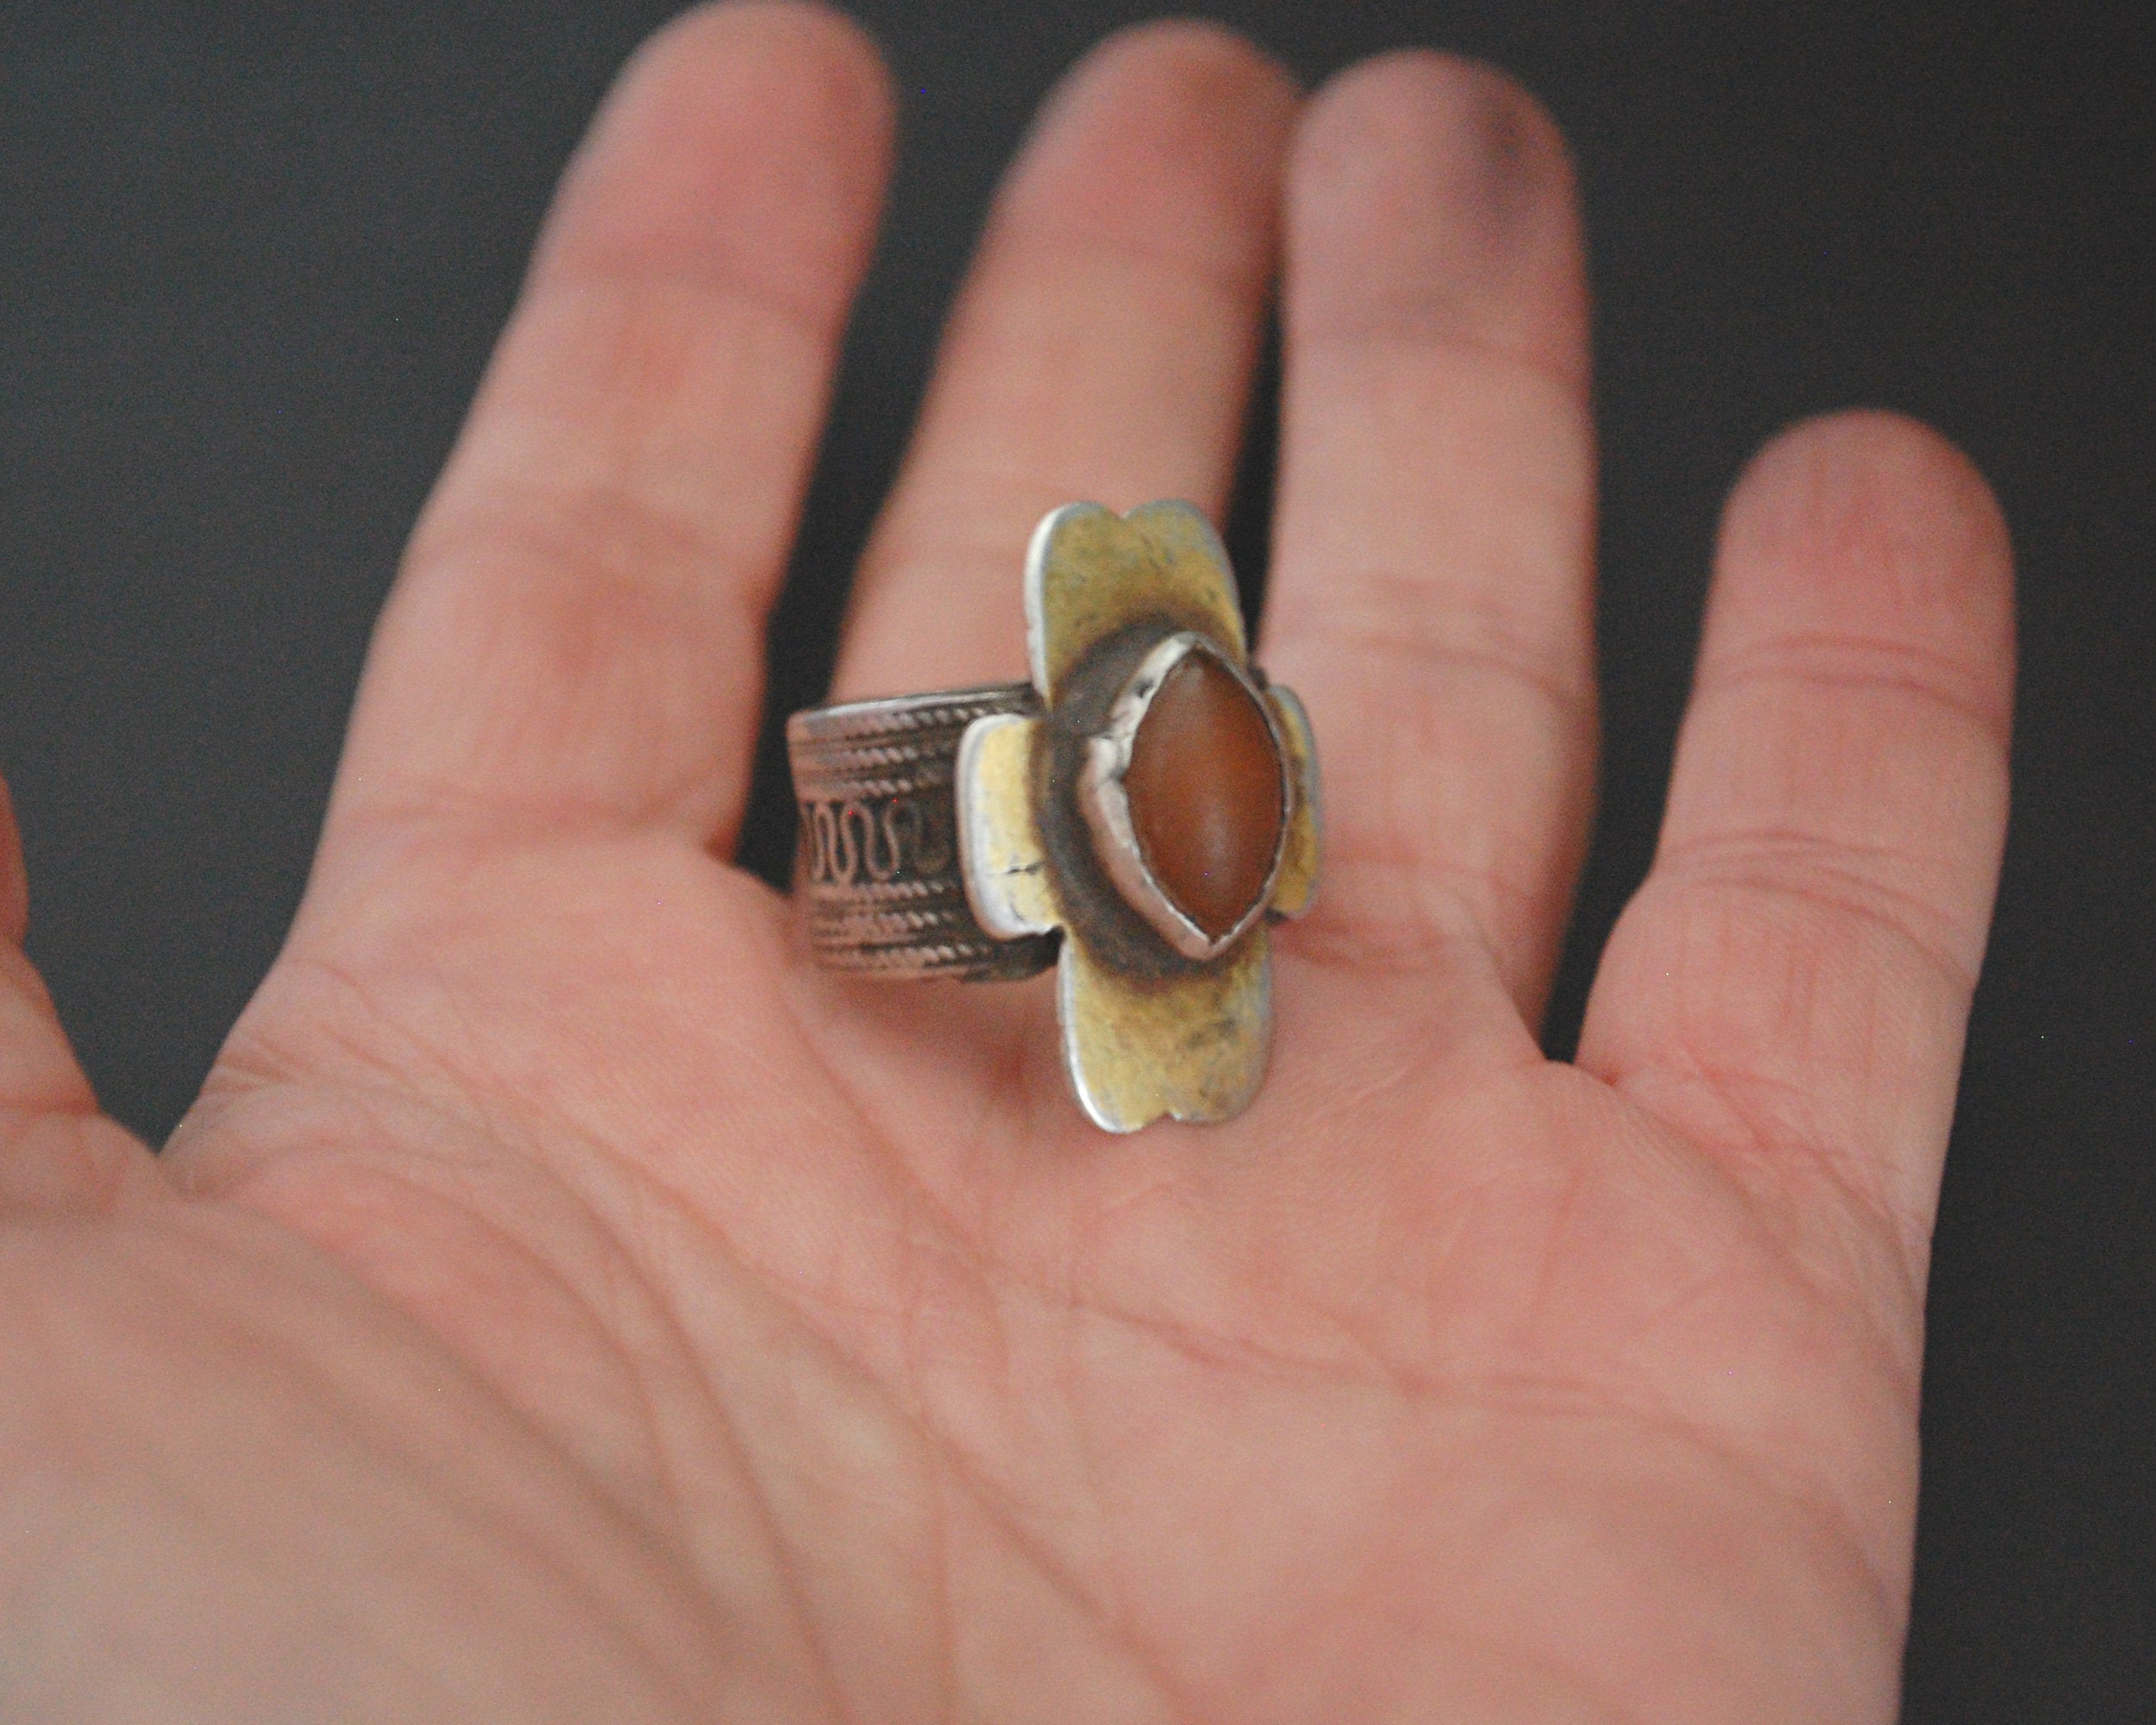 Turkmen Gilded Carnelian Ring - Size 8.5